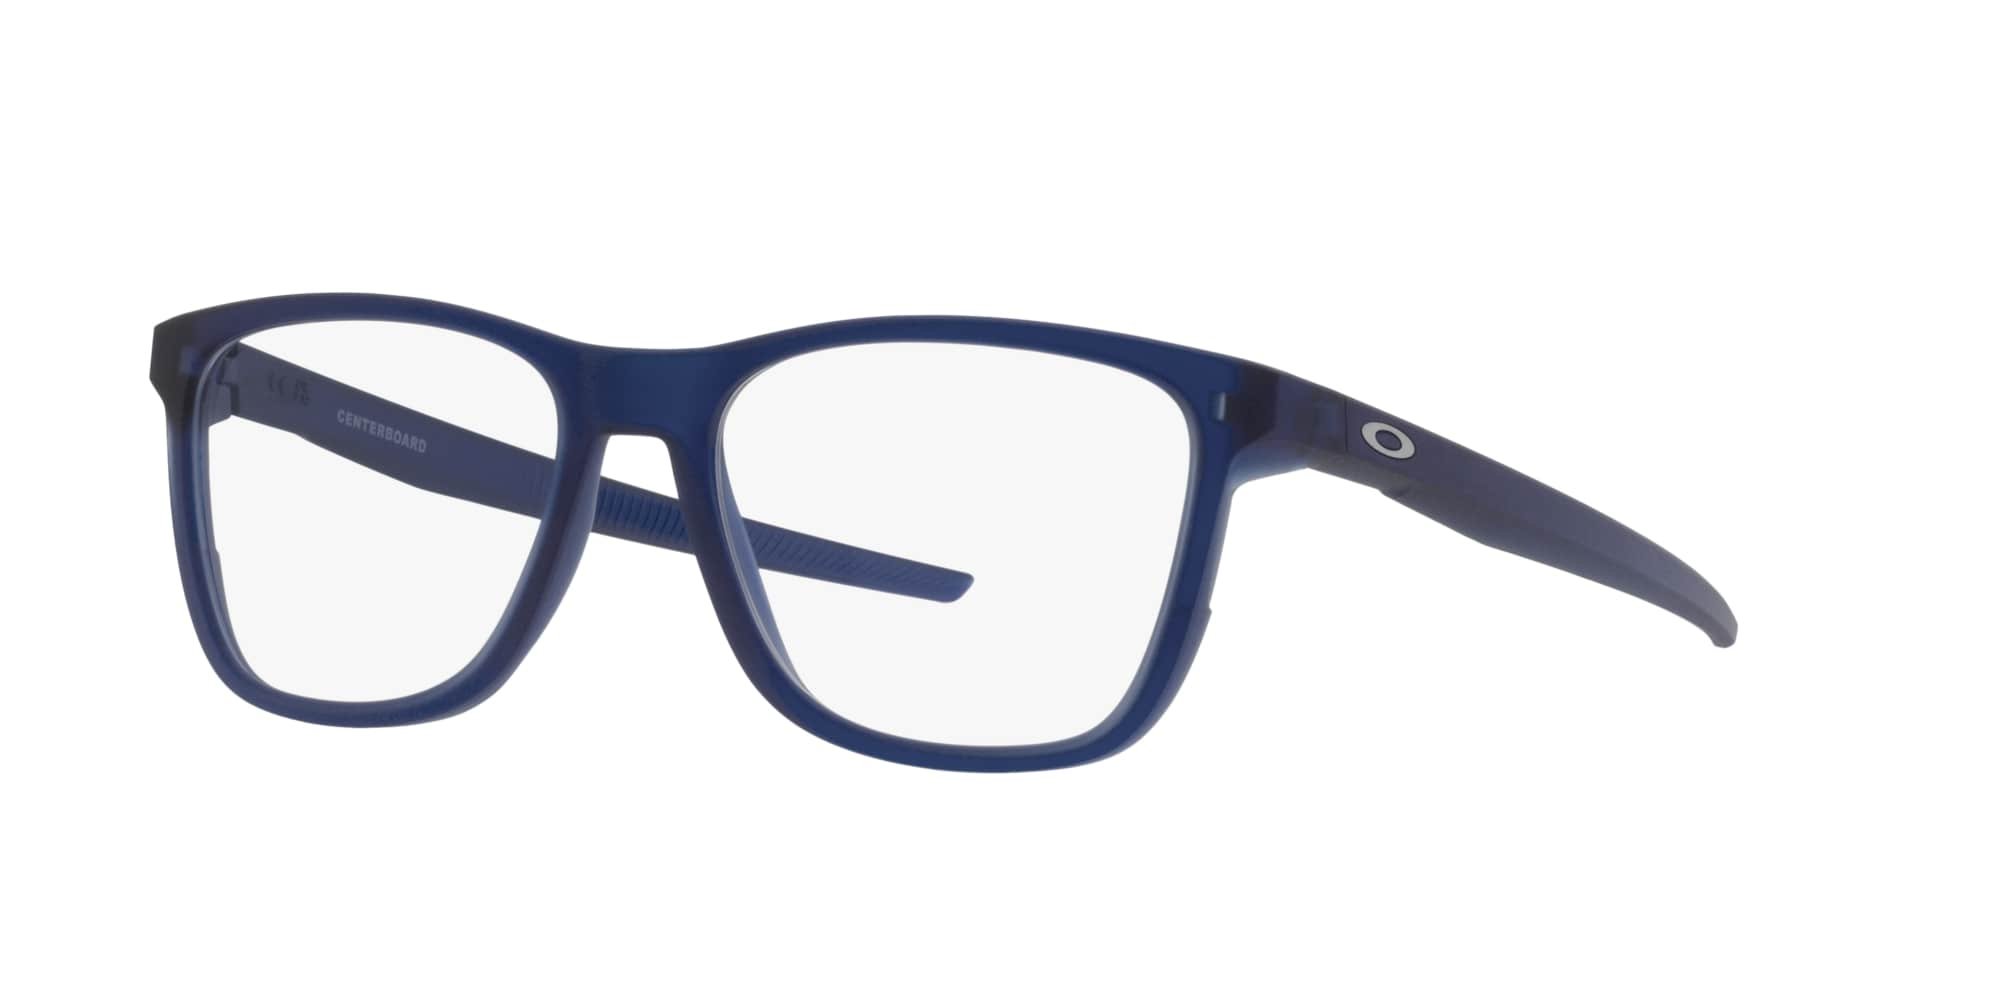 Das Bild zeigt die Korrektionsbrille OX8163 816308 von der Marke Oakley  in  blau transluzent.